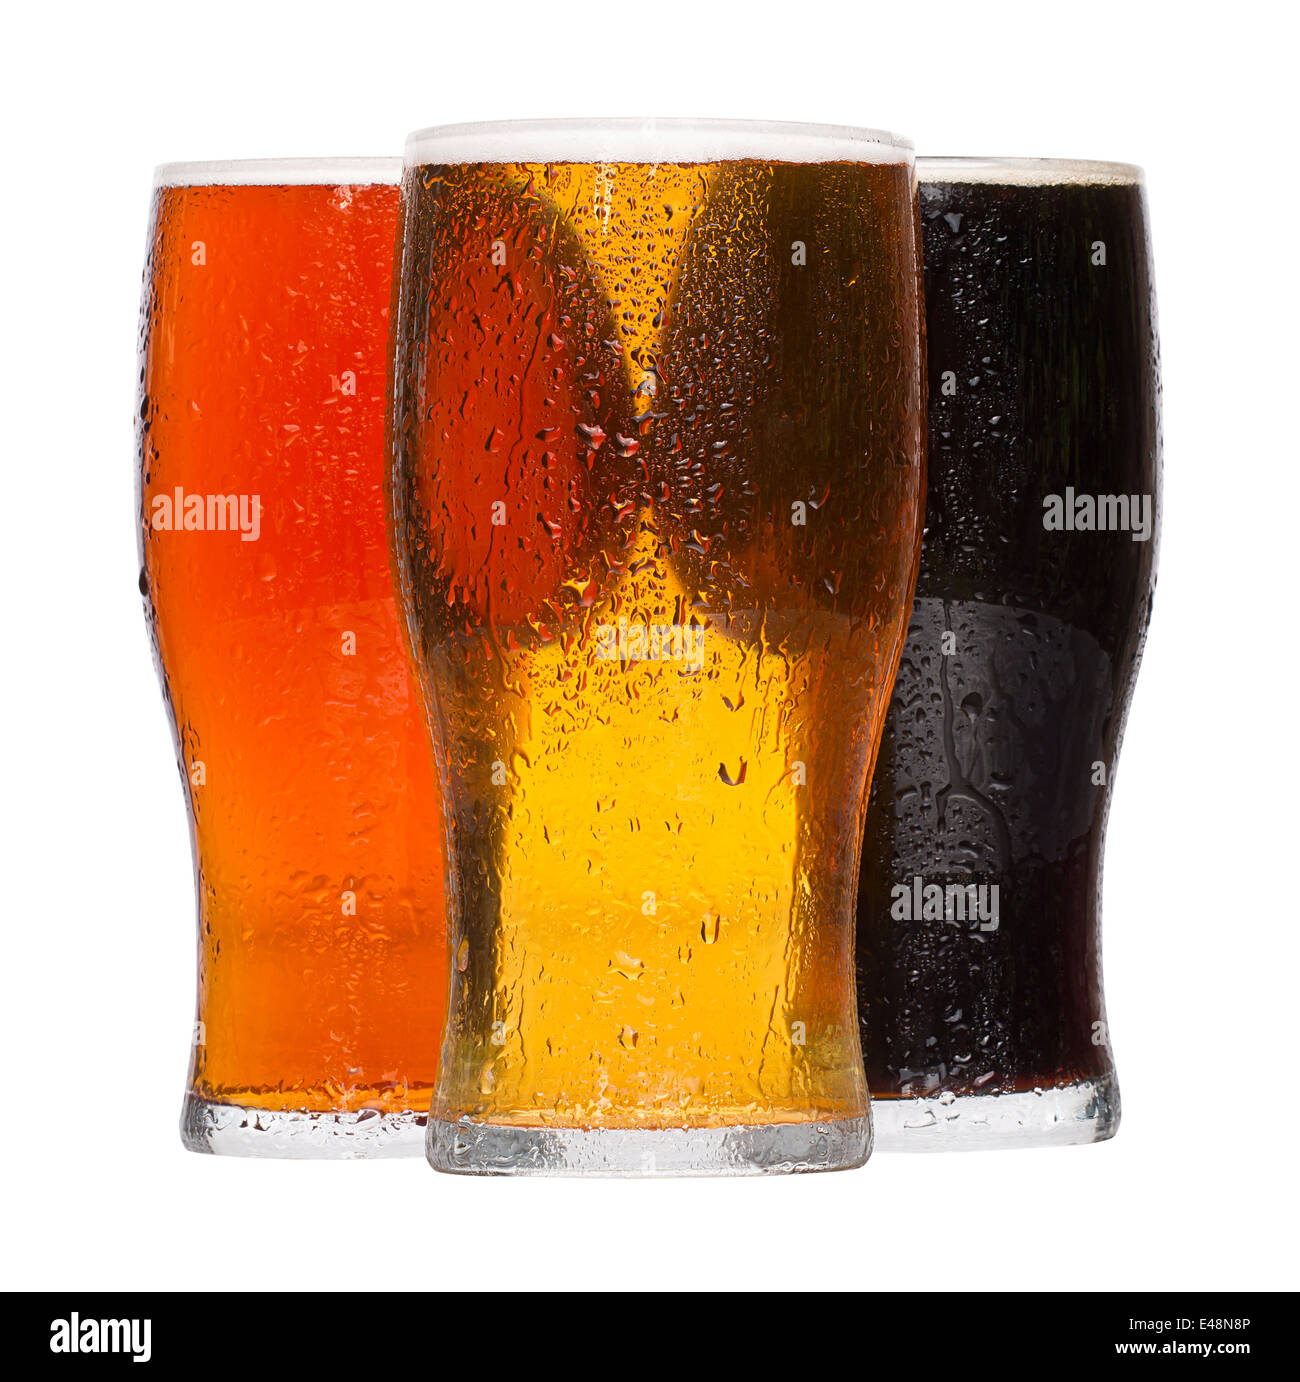 Diferentes refrigeradas refrescante pintas de cerveza lager y stout servido por la industria de bebidas alcohólicas Foto de stock